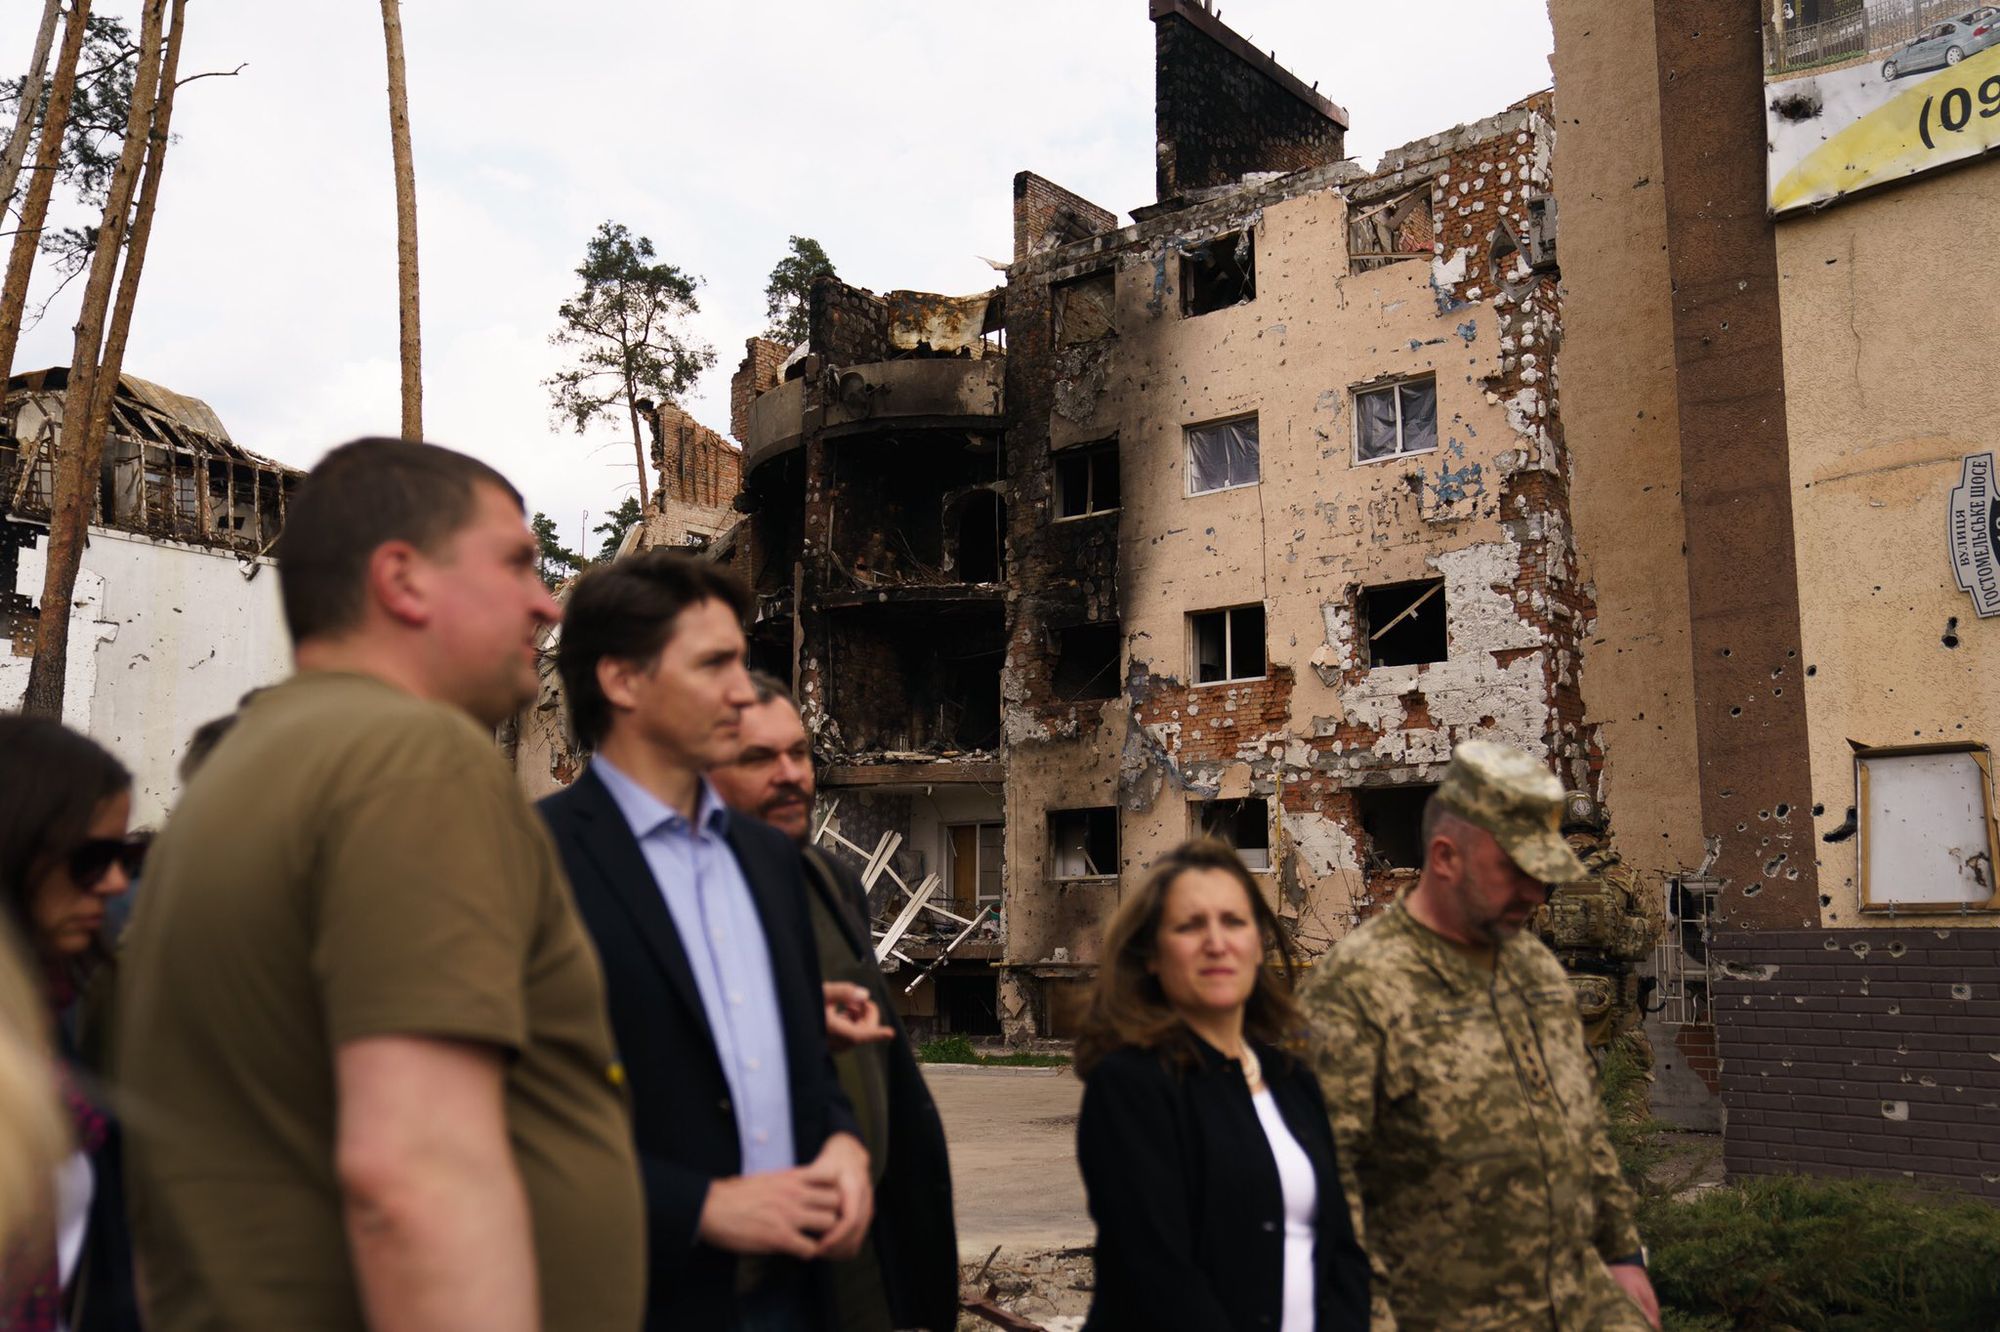 96% Of Major Canadian Editorials Support War In Ukraine